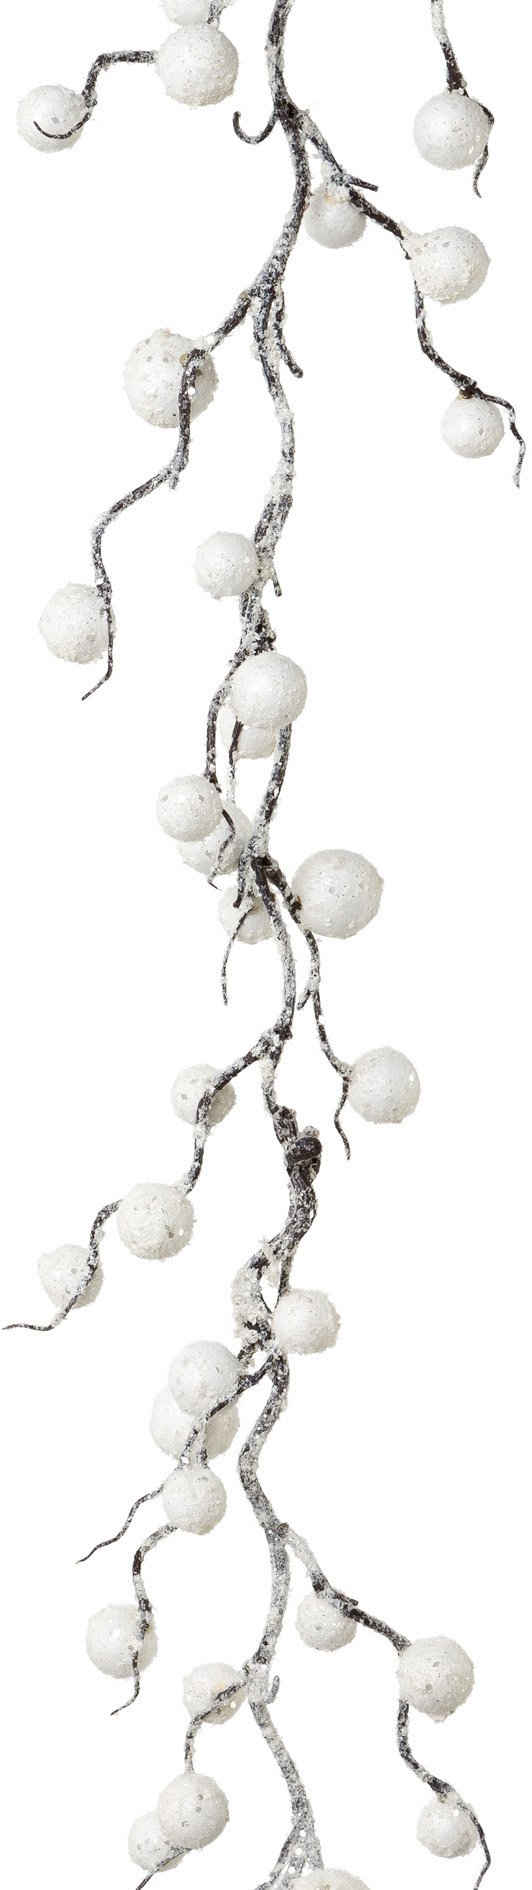 Winterliche Kunstpflanze Weihnachtsdeko, Weihnachtsgirlande Schneekugel, Creativ deco, Girlande in beschneiter Optik, Длина 180 cm